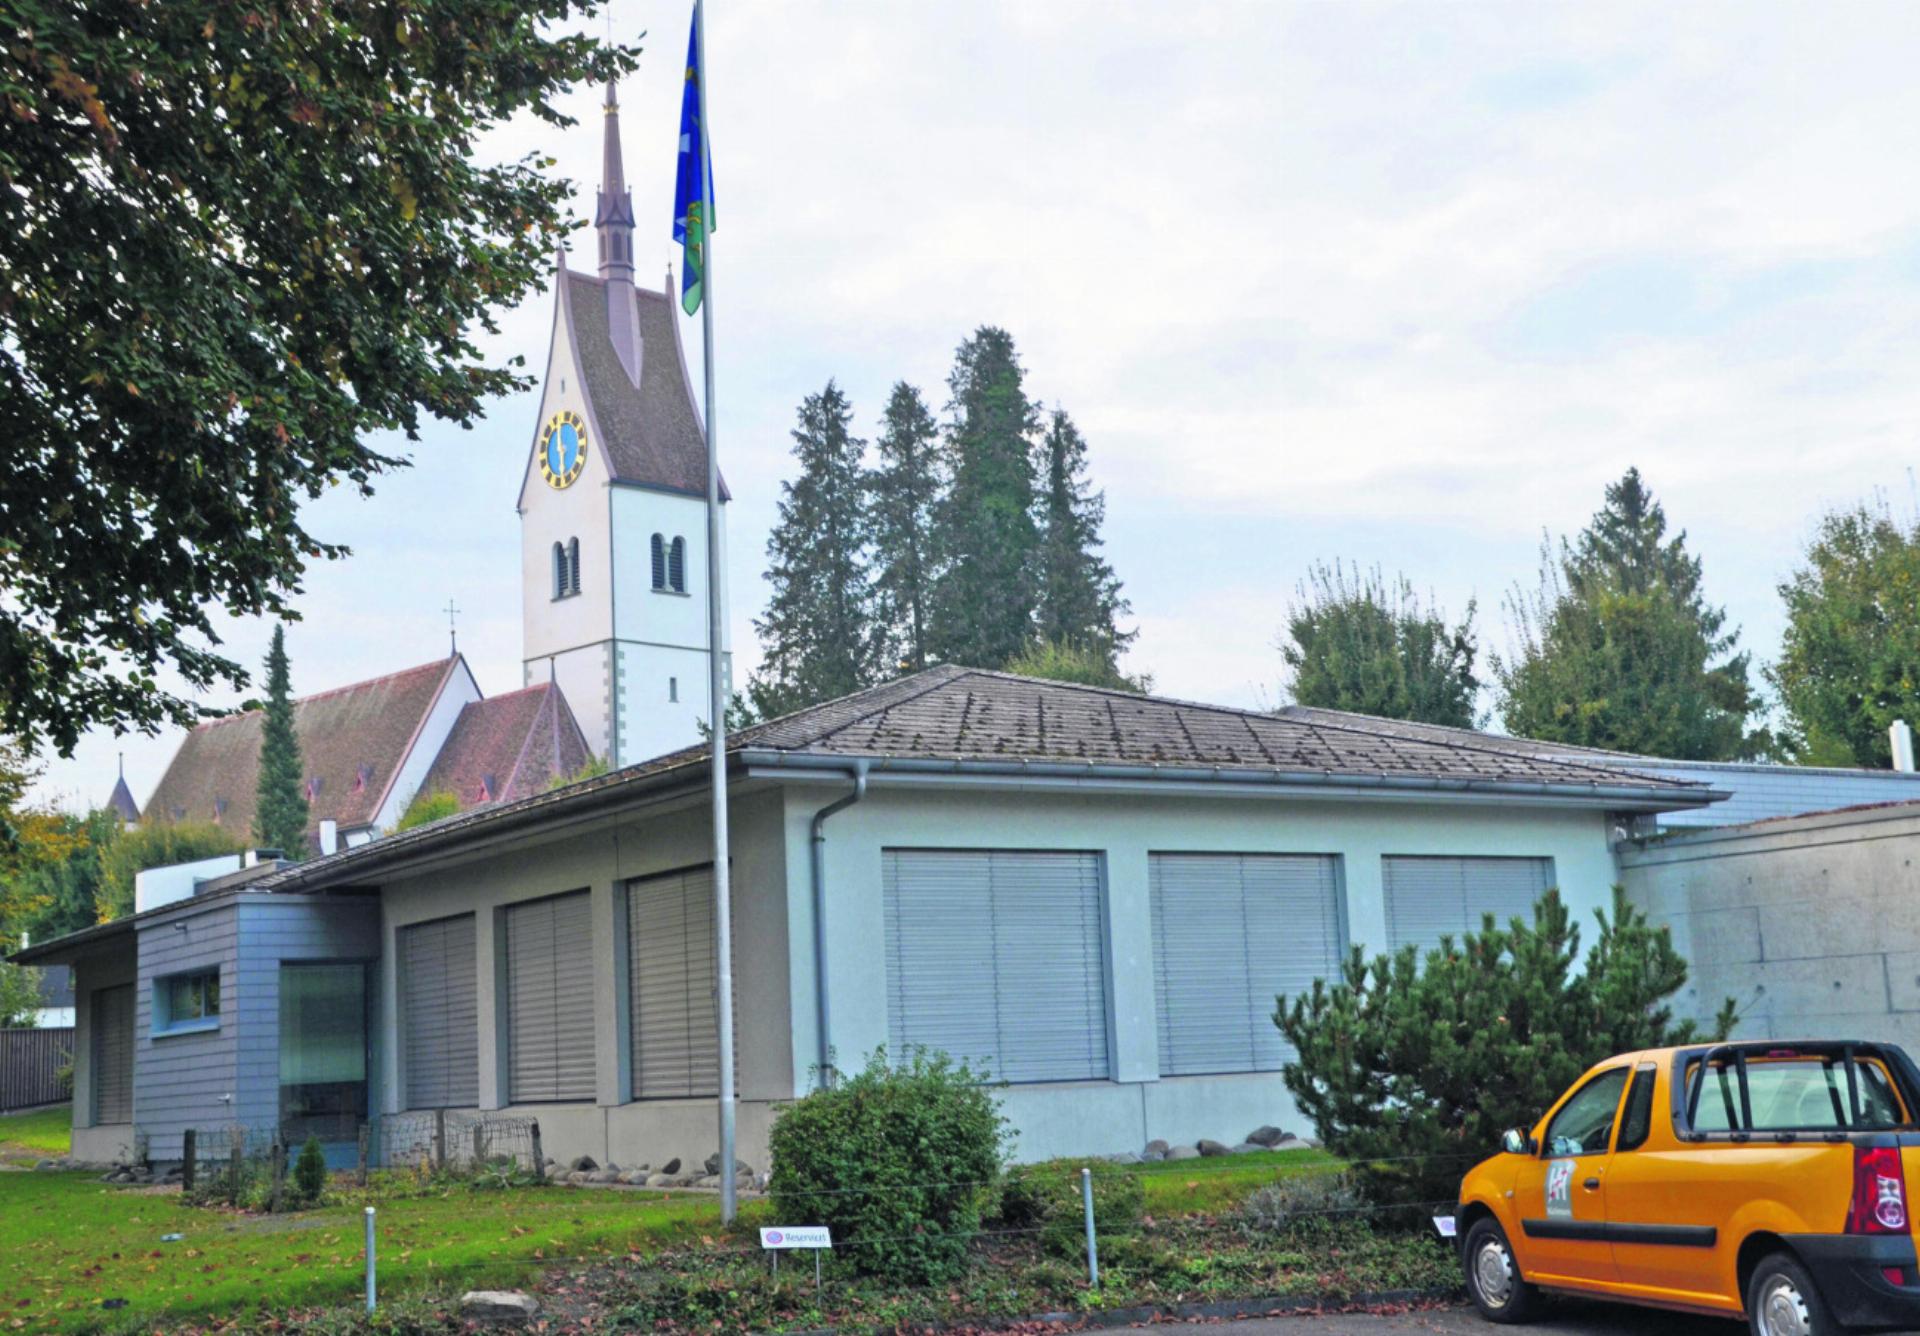 Der Gemeinderat Merenschwand orientierte über die geplante Kindergarten-Erweiterung. Auf dem Hausteil rechts soll ein zweites Geschoss entstehen. Foto: tst